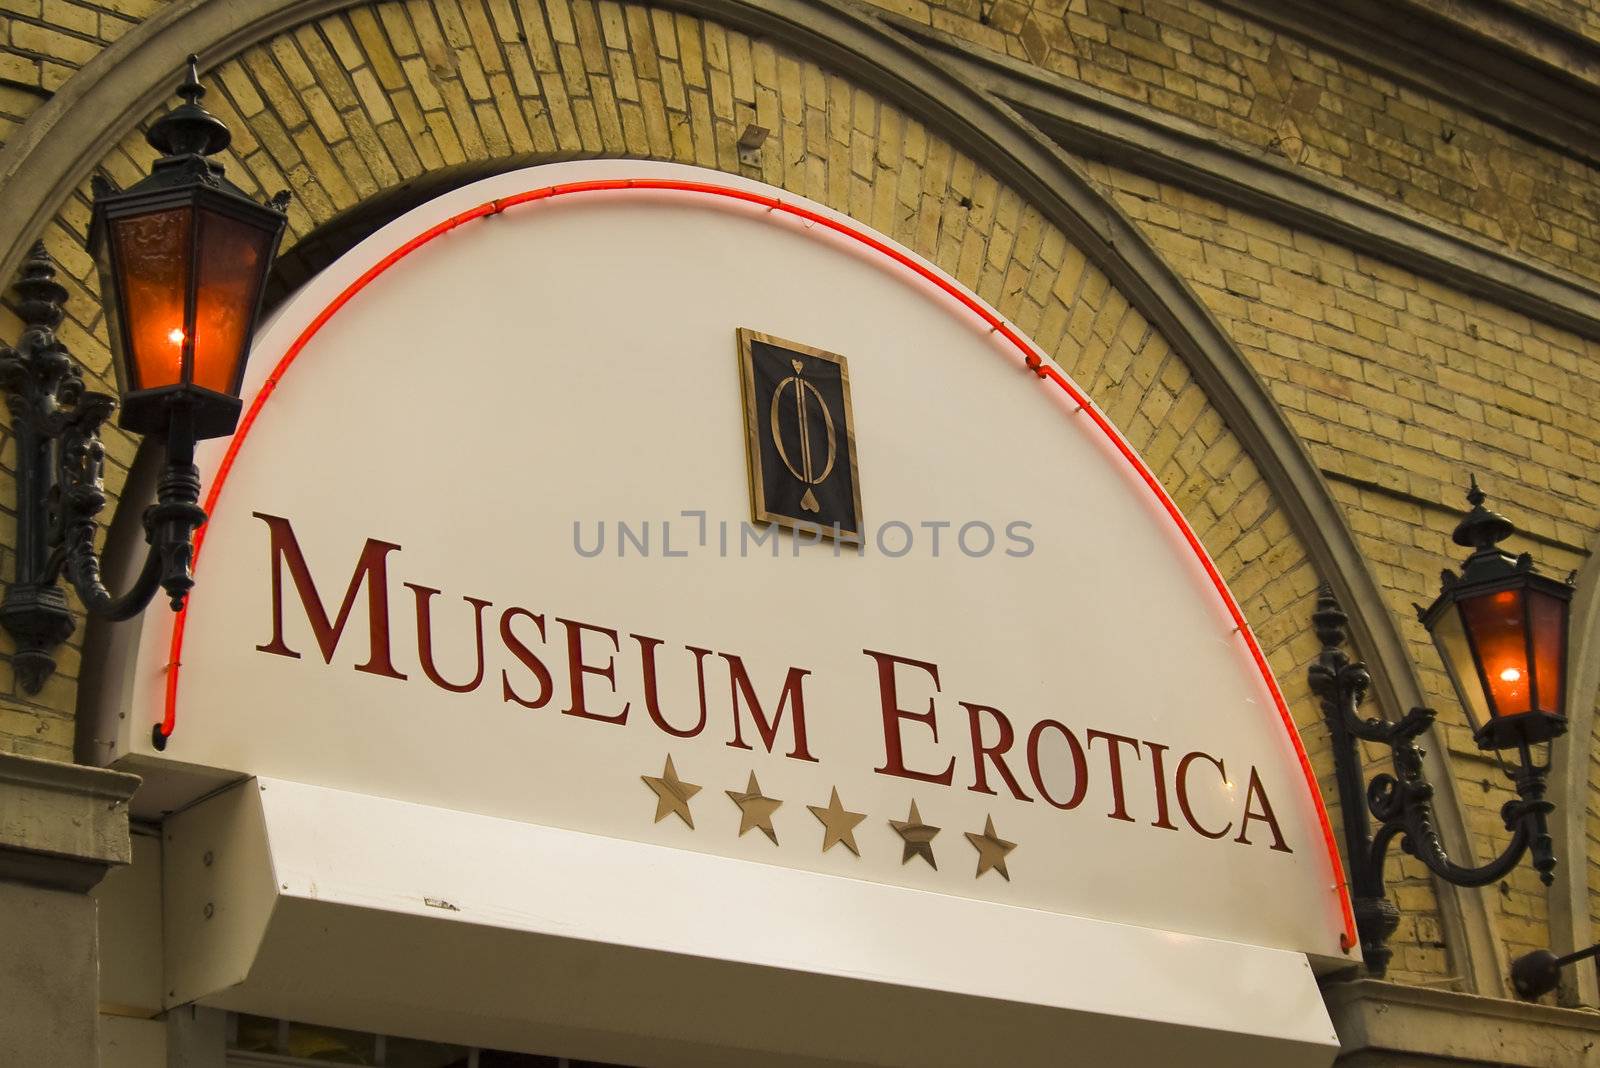 Danish museum of erotic by photo4dreams